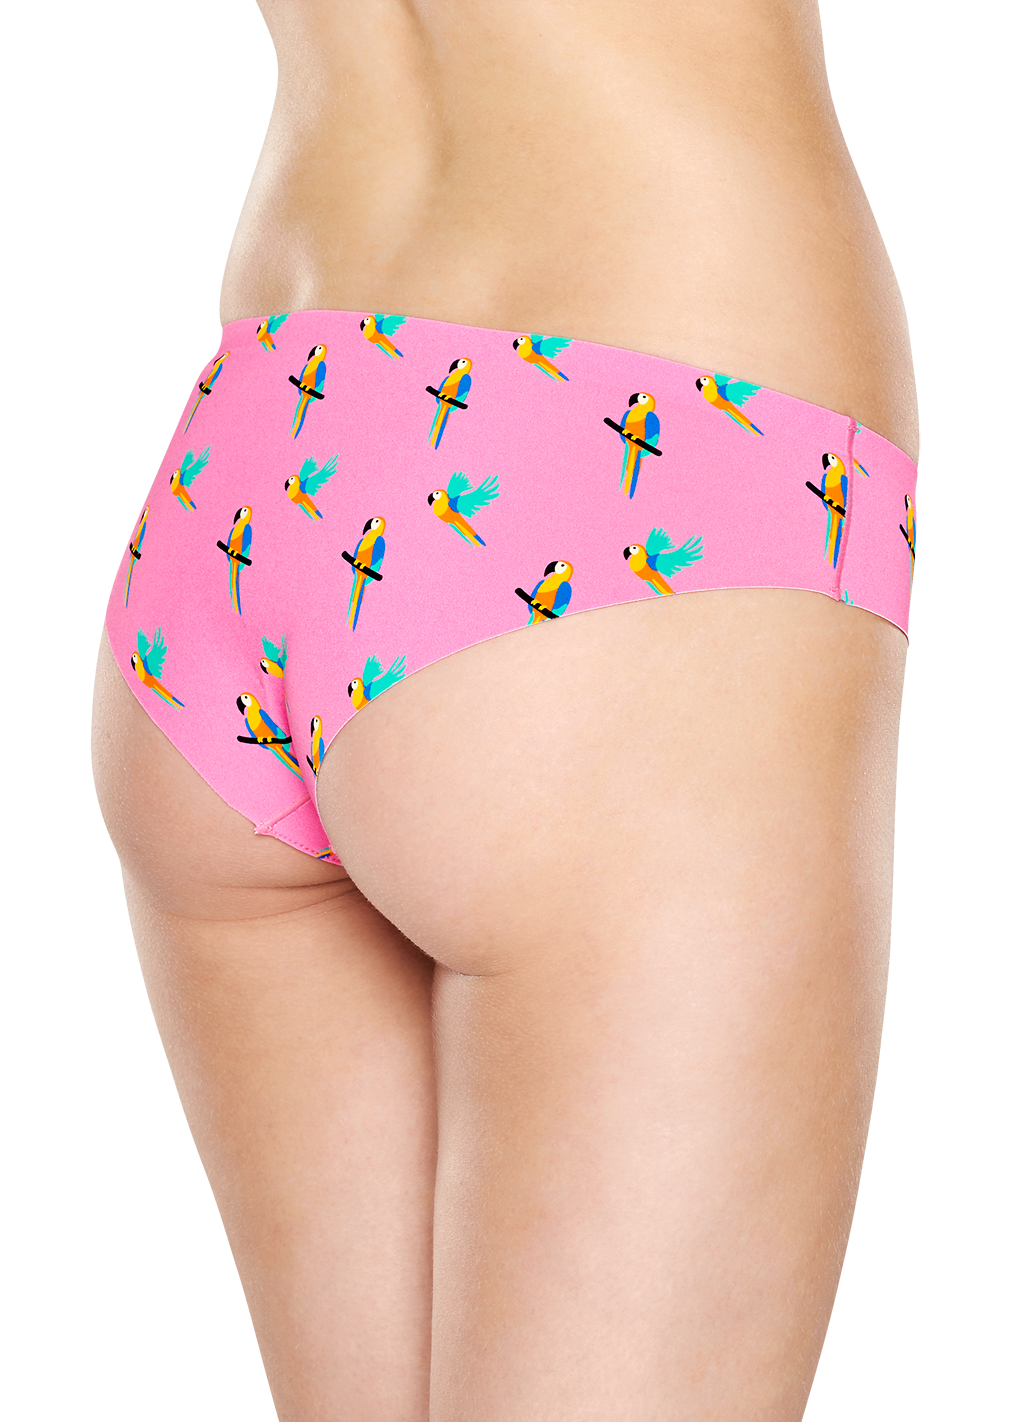 Pink cheeky: Parrot - Women's Underwear | Happy Socks